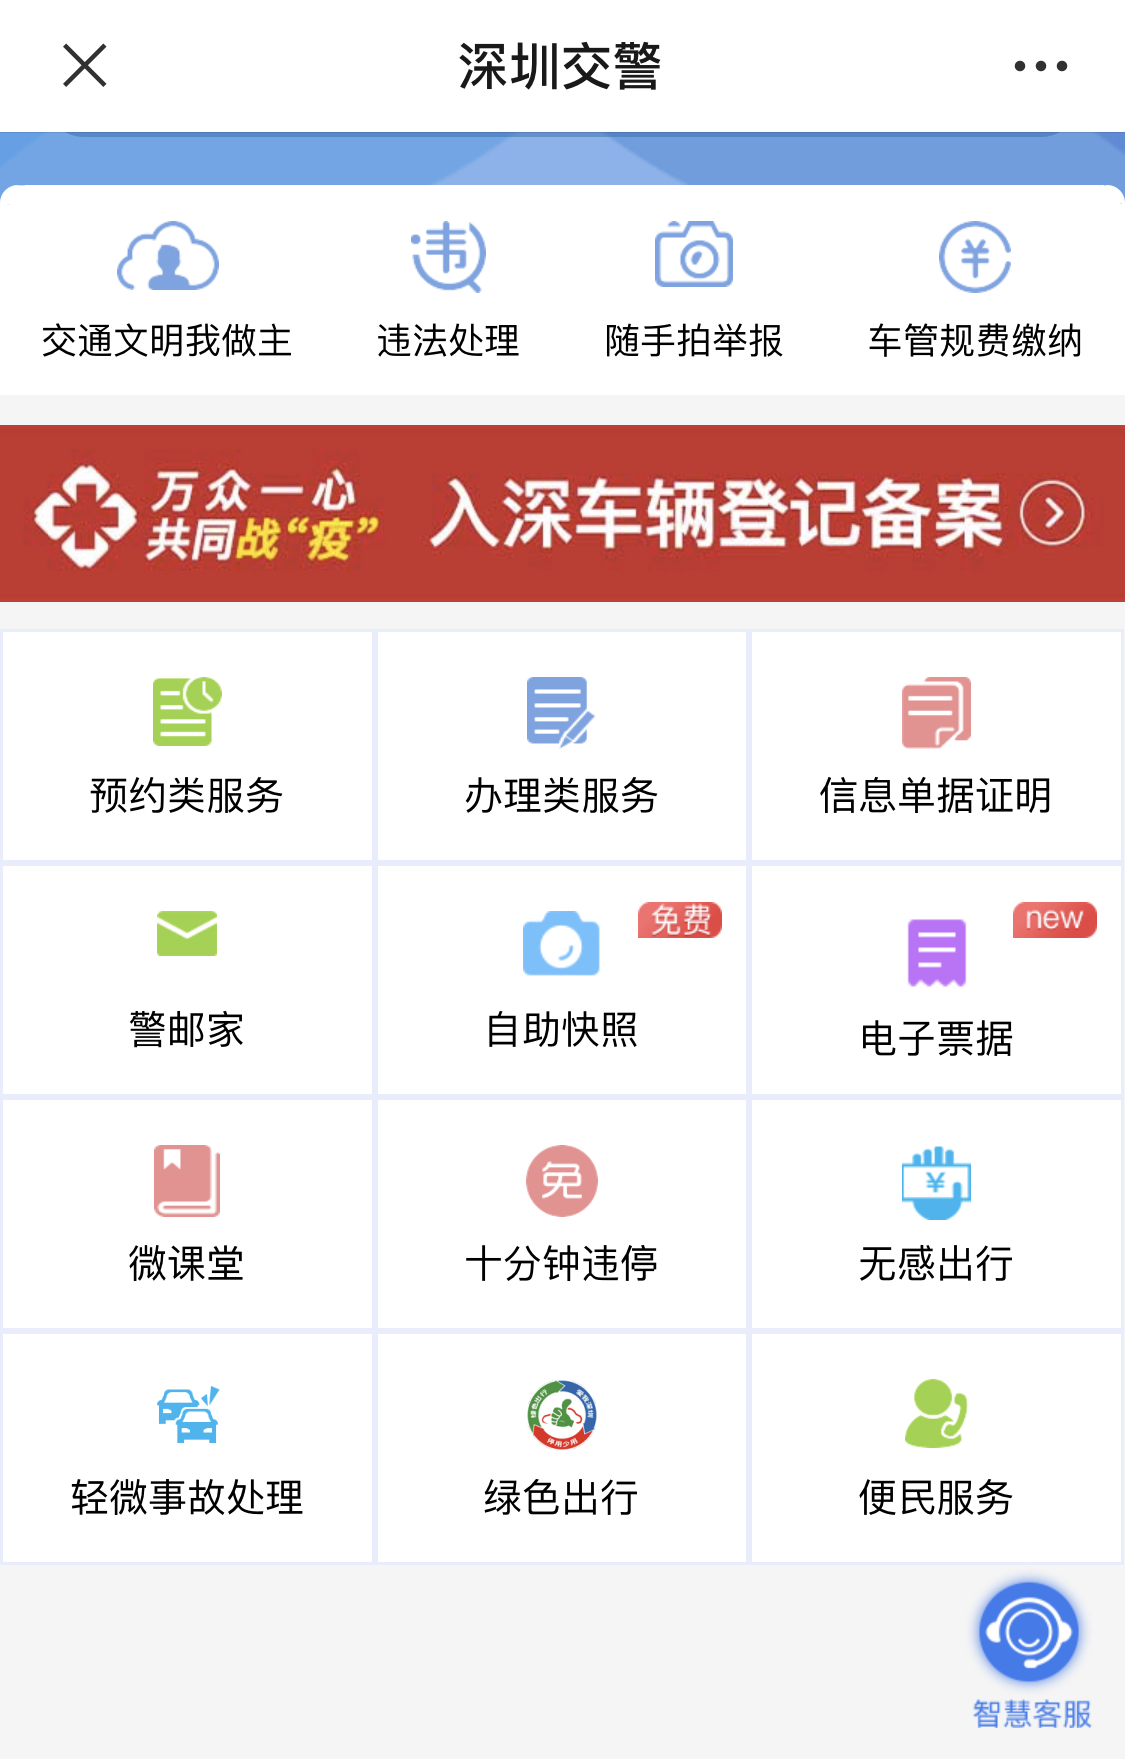 深圳:公路返城需提前1天网上登记报备